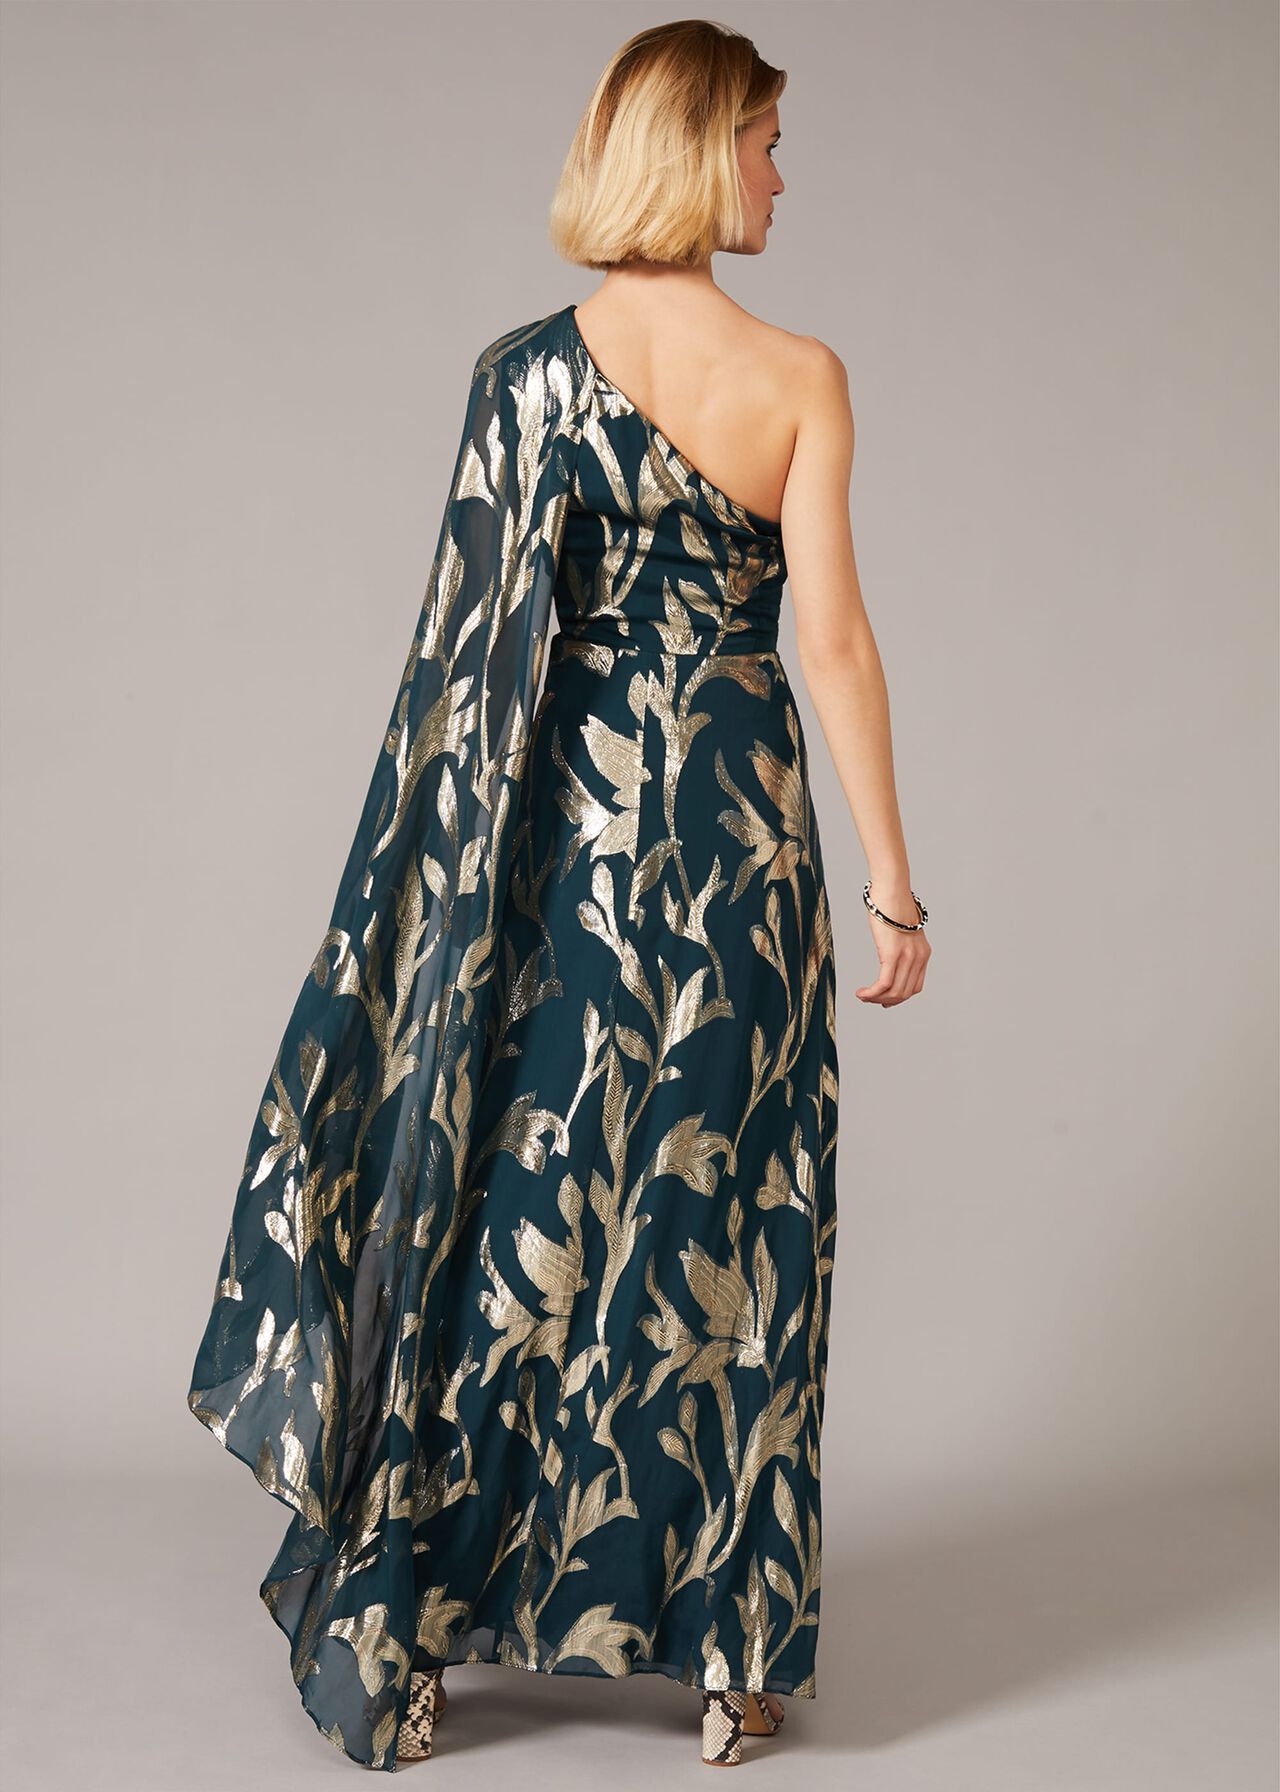 Kiara Shimmer Drape Dress